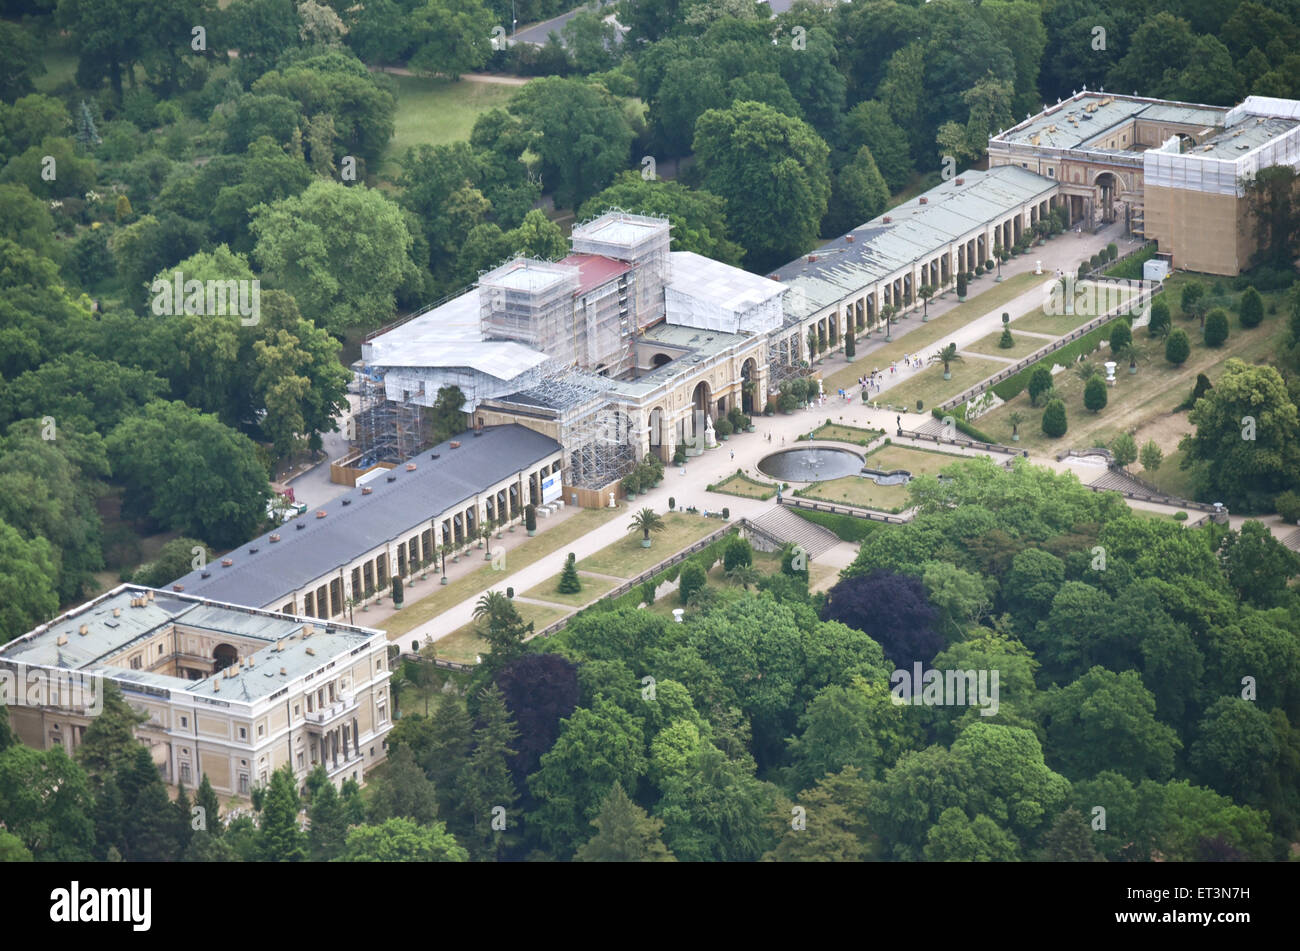 Blick auf die Orangerie, teilweise umgeben von Gerüsten, in Potsdam, Deutschland, 6. Juni 2015. Frederick William IV von Preußen hatte die Orangerie in Potsdam zwischen 1851 und 1864 erbaut. Foto: BERND SETTNIK/dpa Stockfoto